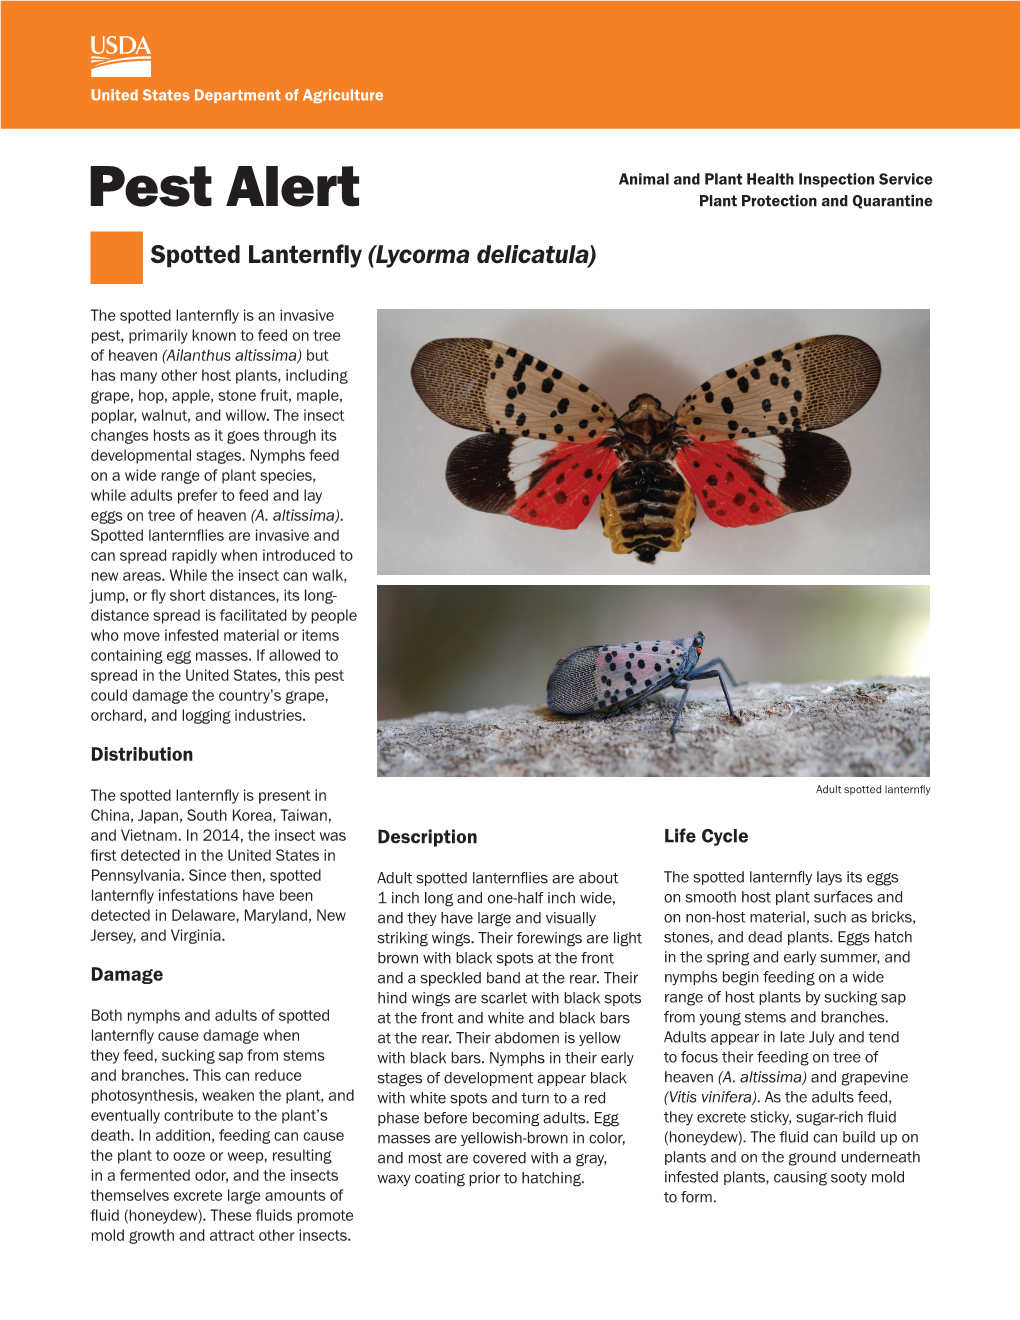 Pest Alert: Spotted Lanternfly (Lycorma Delicatula)